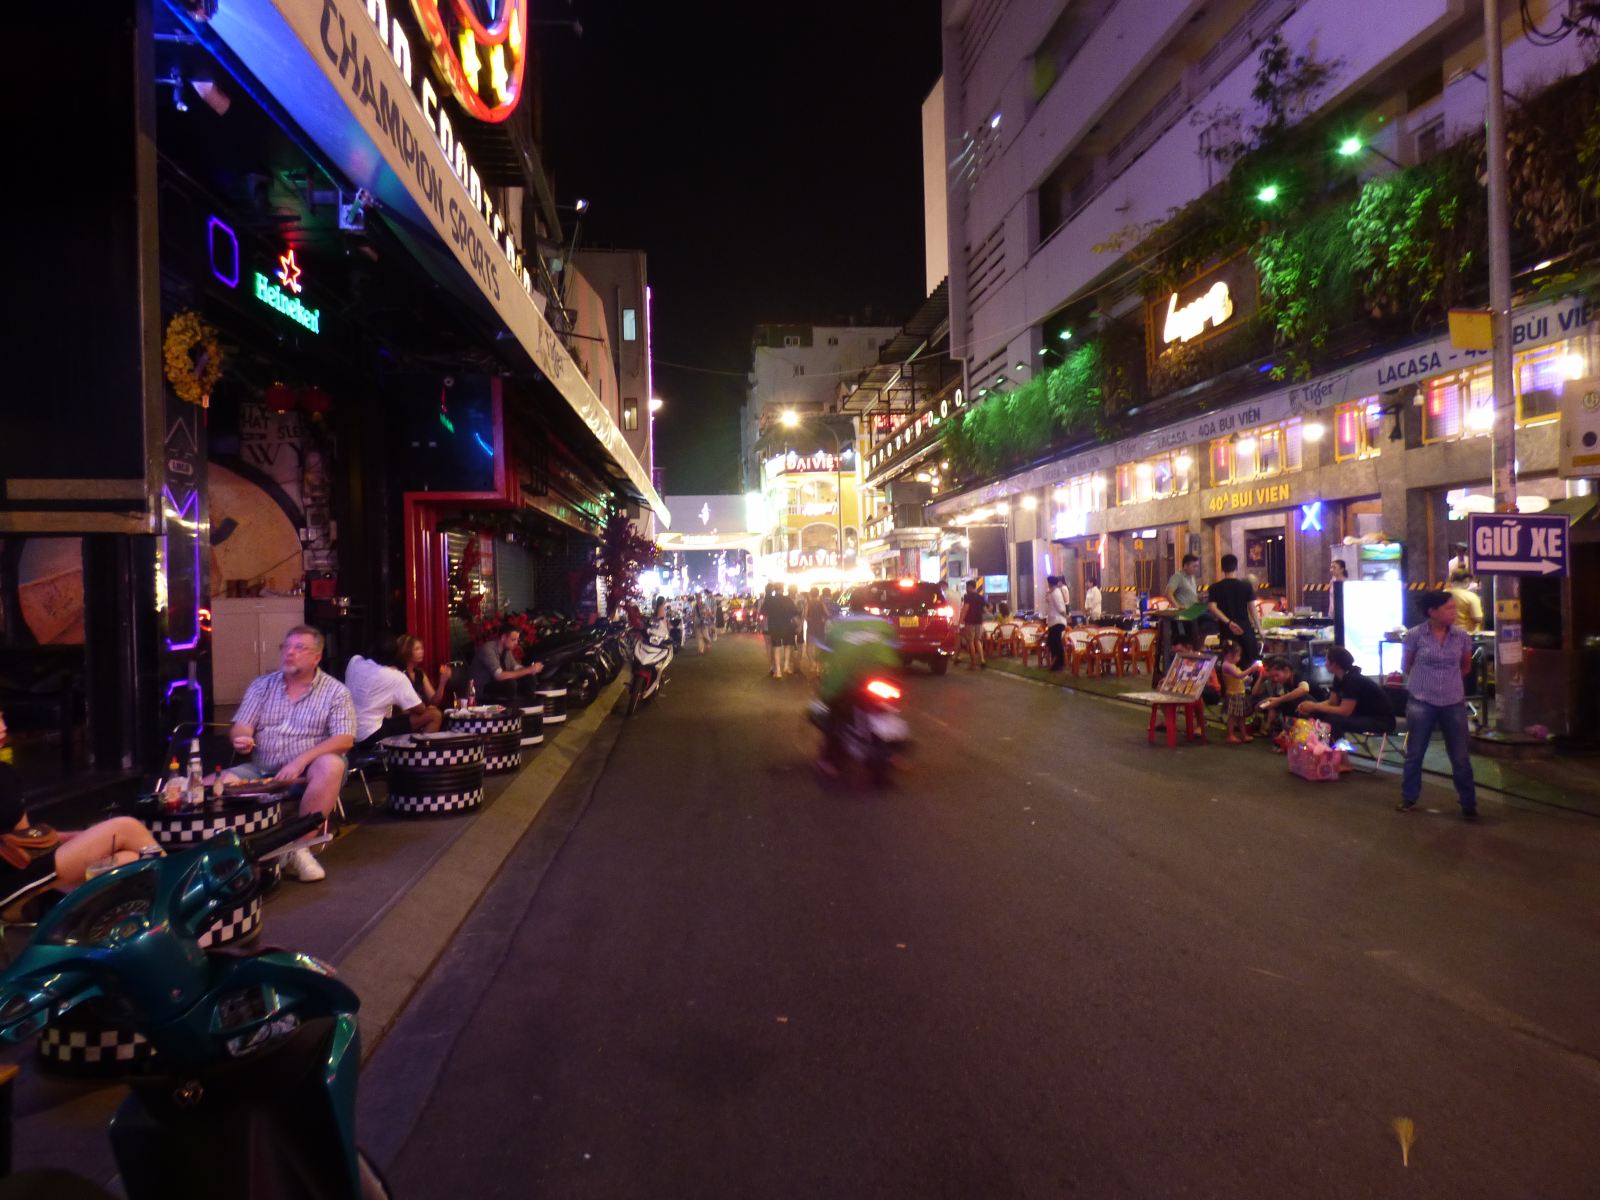 Bui Vien street